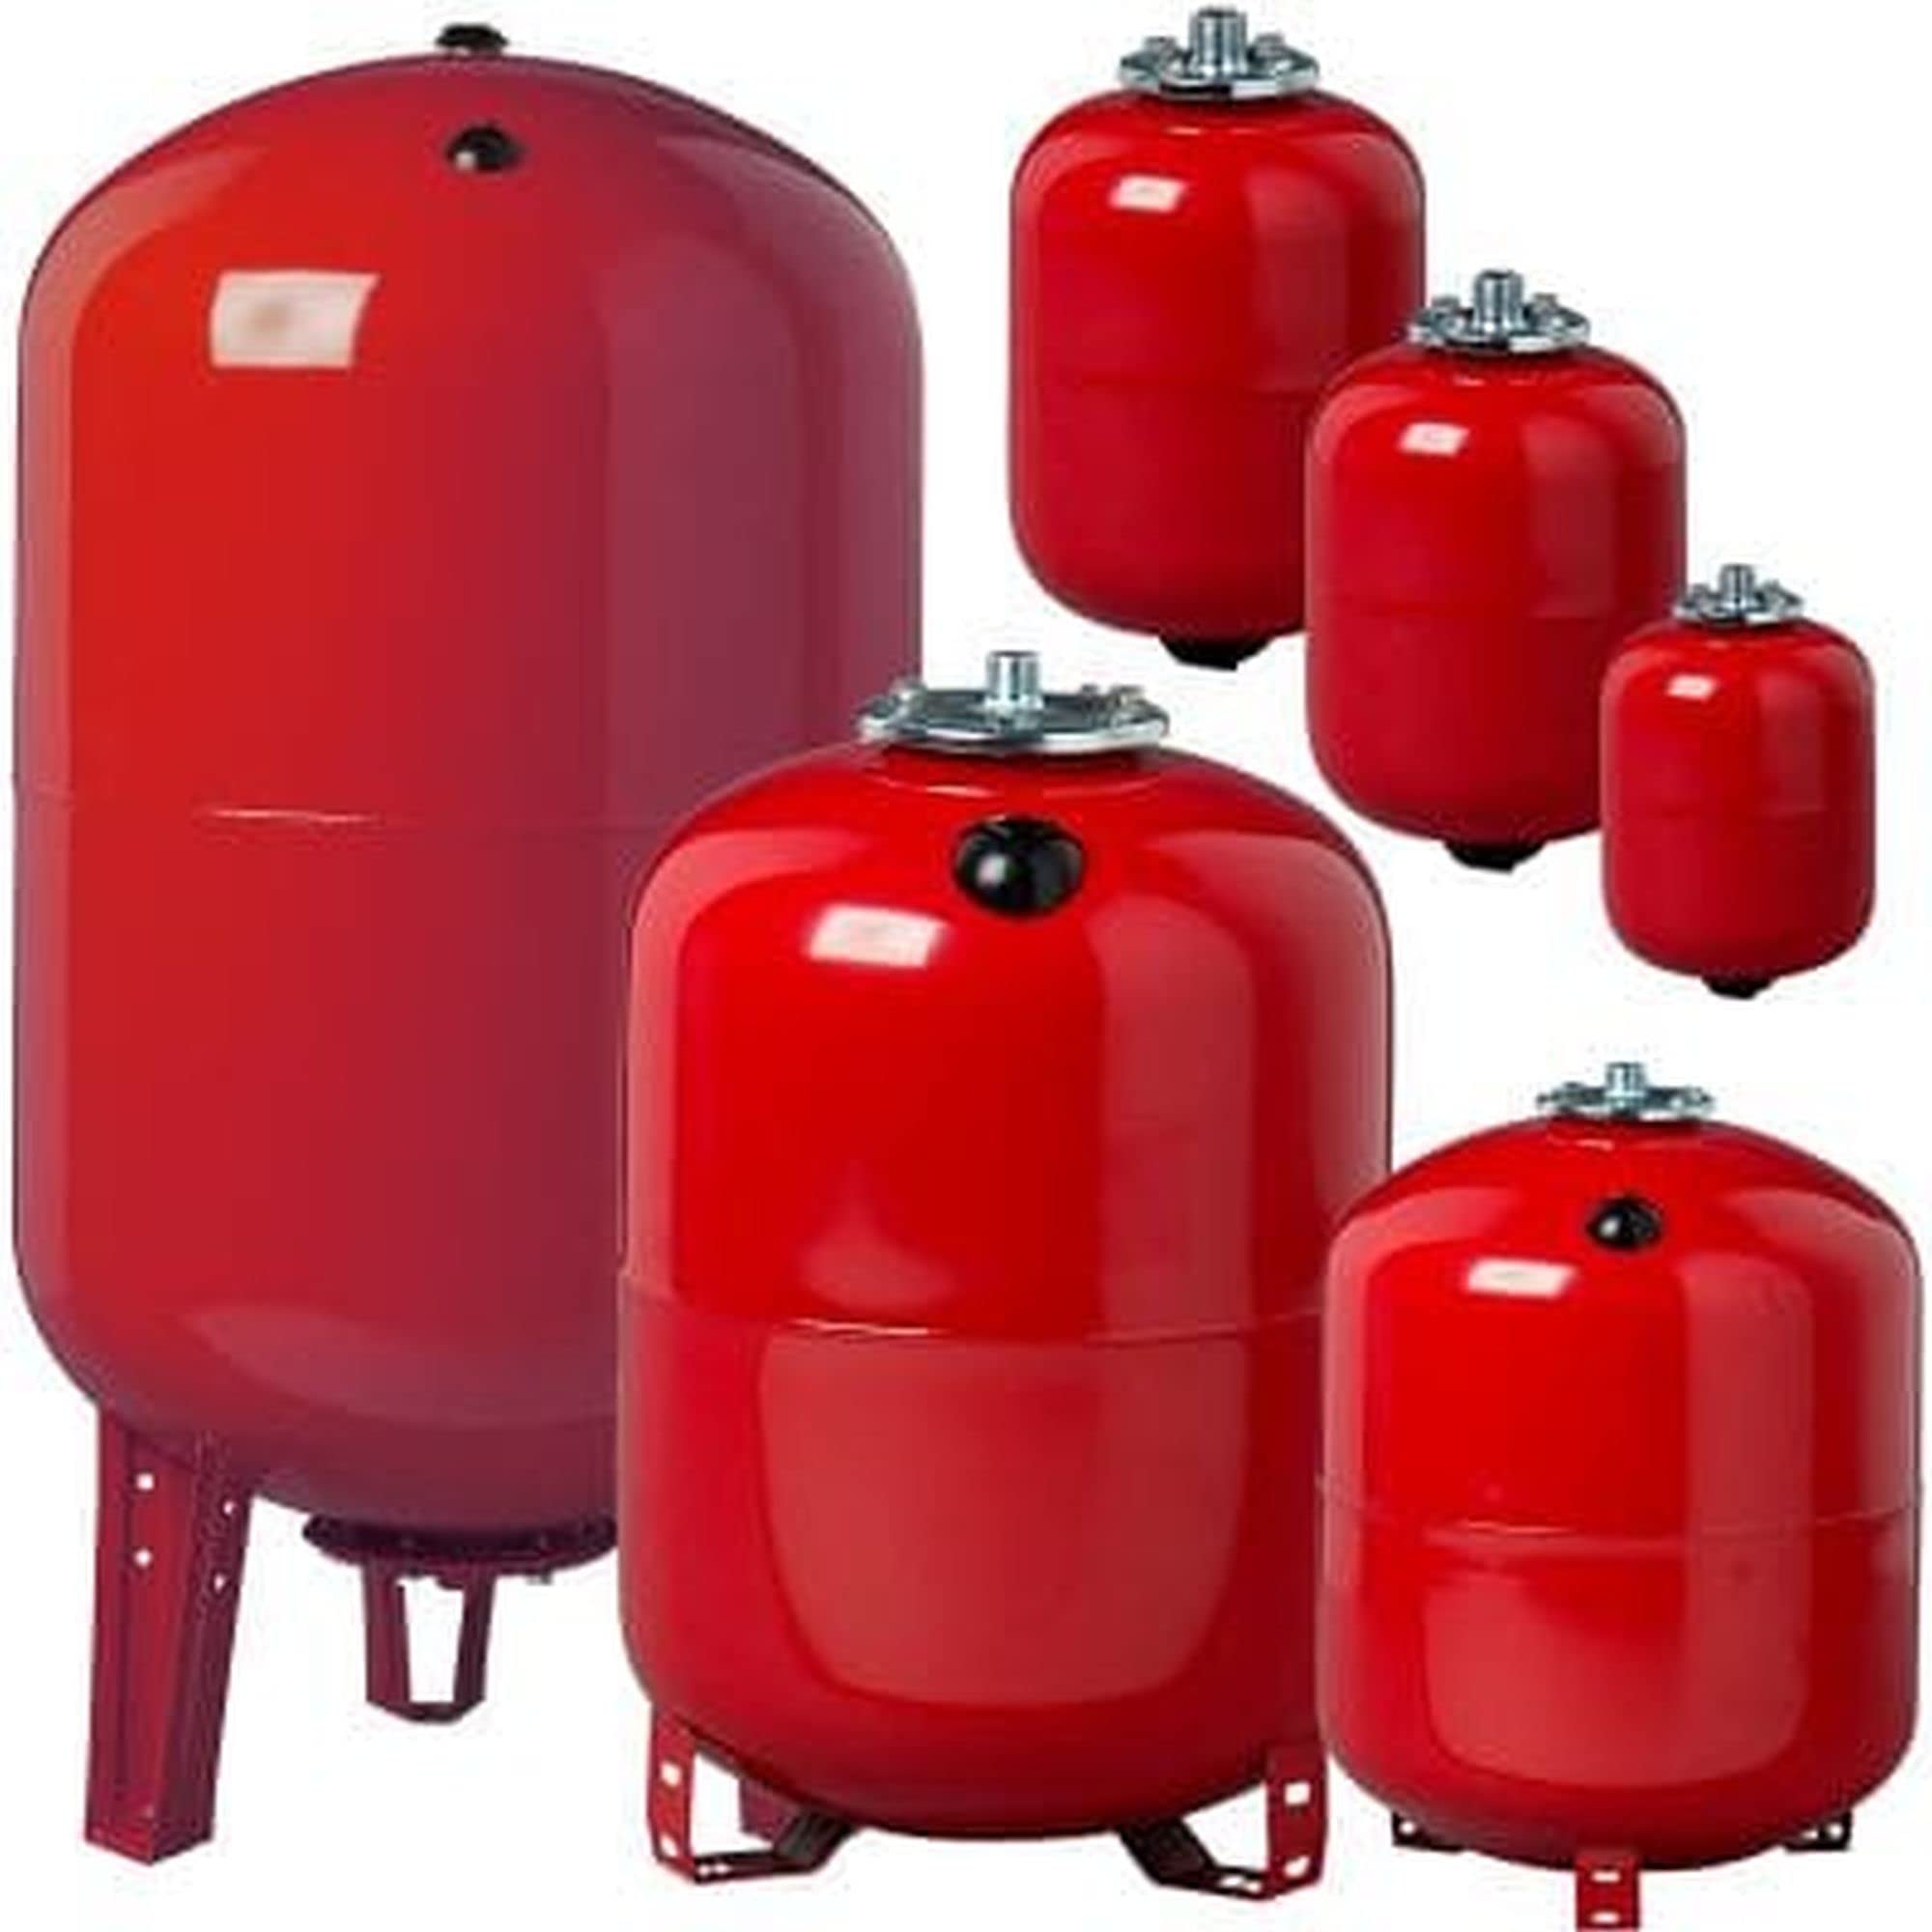 Heizung Ausdehnungsgefäße von 8 Liter bis 500 Liter - Ausgleichsbehälter für konstanten Druck in der Anlage und sicheren Betrieb von Druck- Heiz und Kühlgeräten (200 Liter)